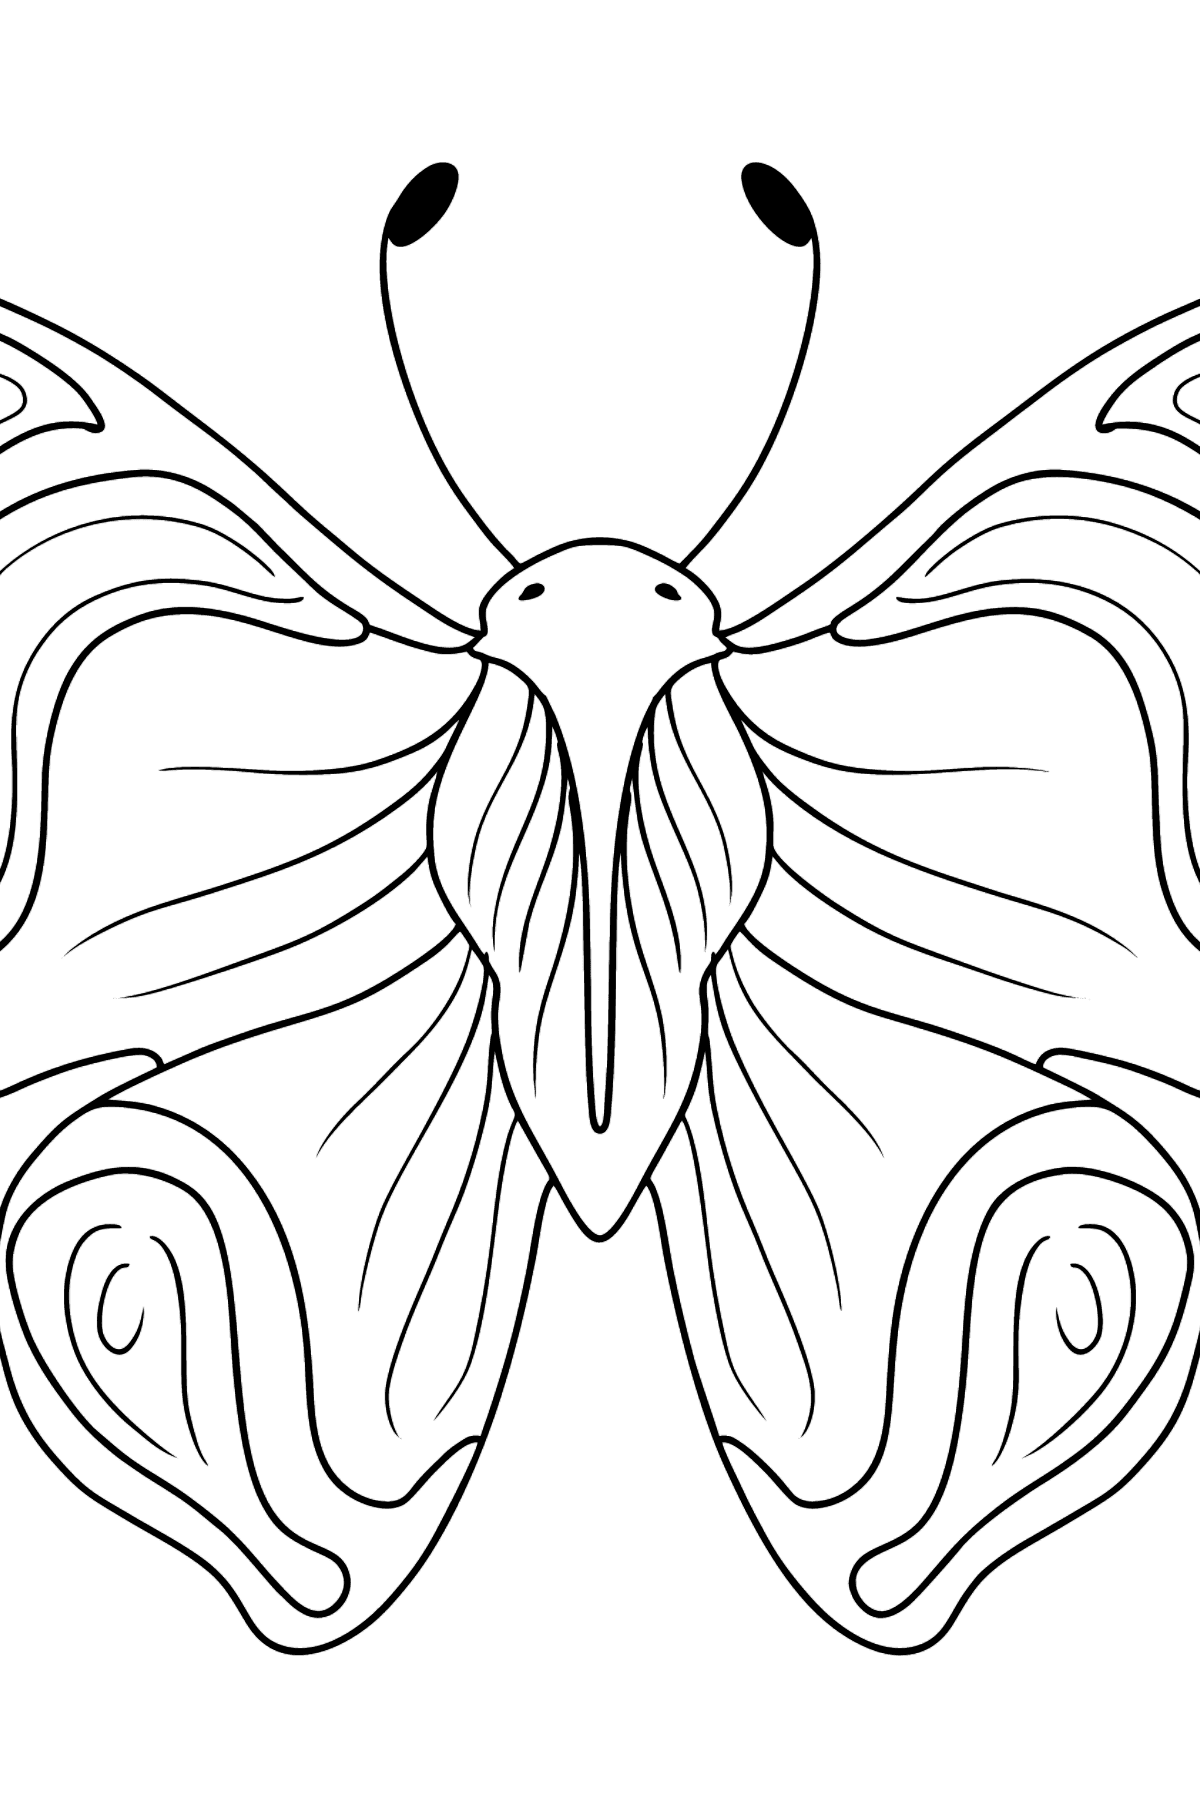 Dibujo de Almirante Butterfly para colorear - Dibujos para Colorear para Niños